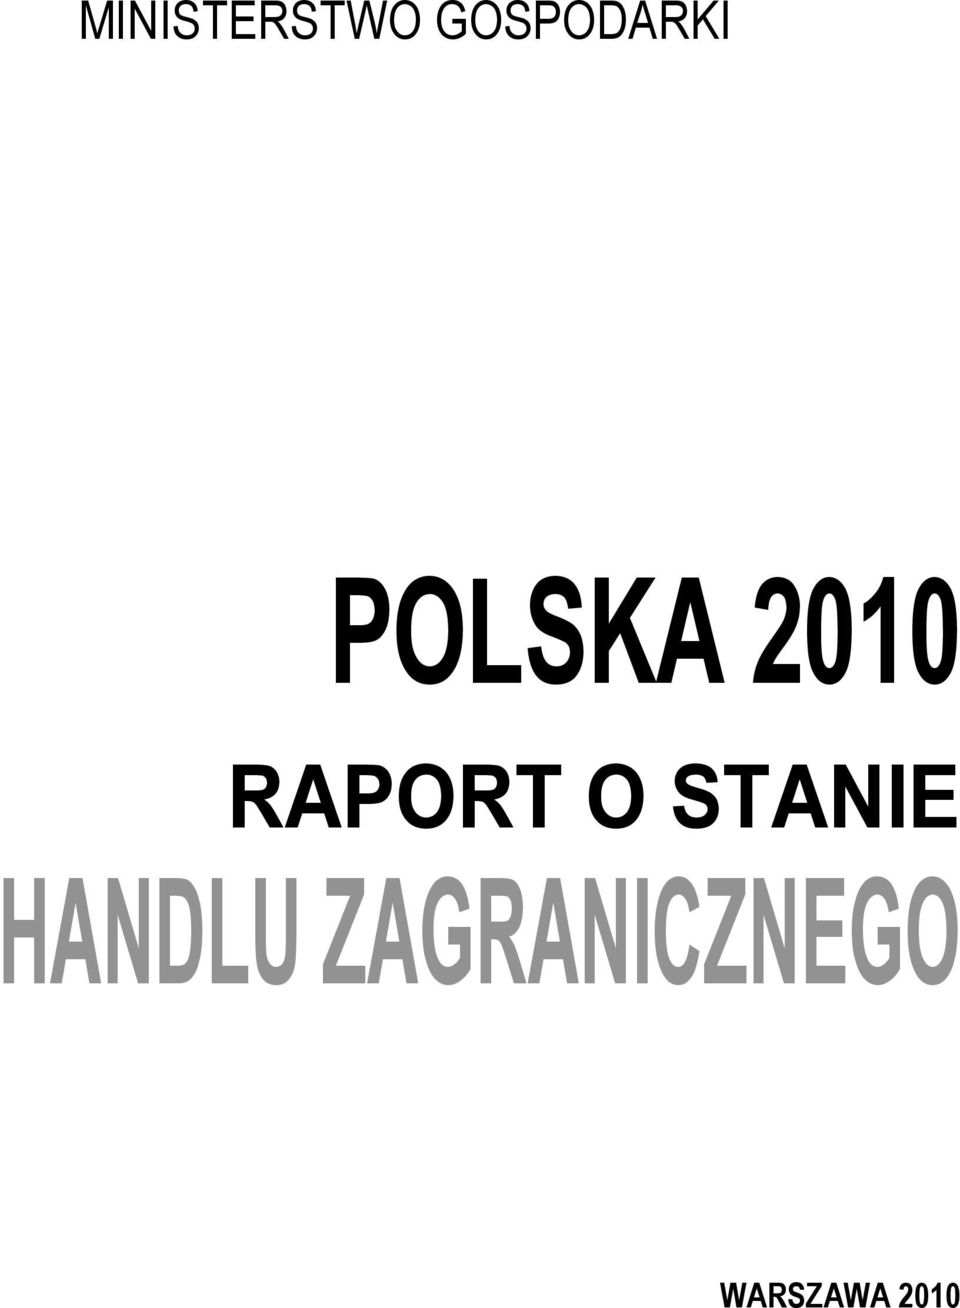 2010 RAPORT O STANIE